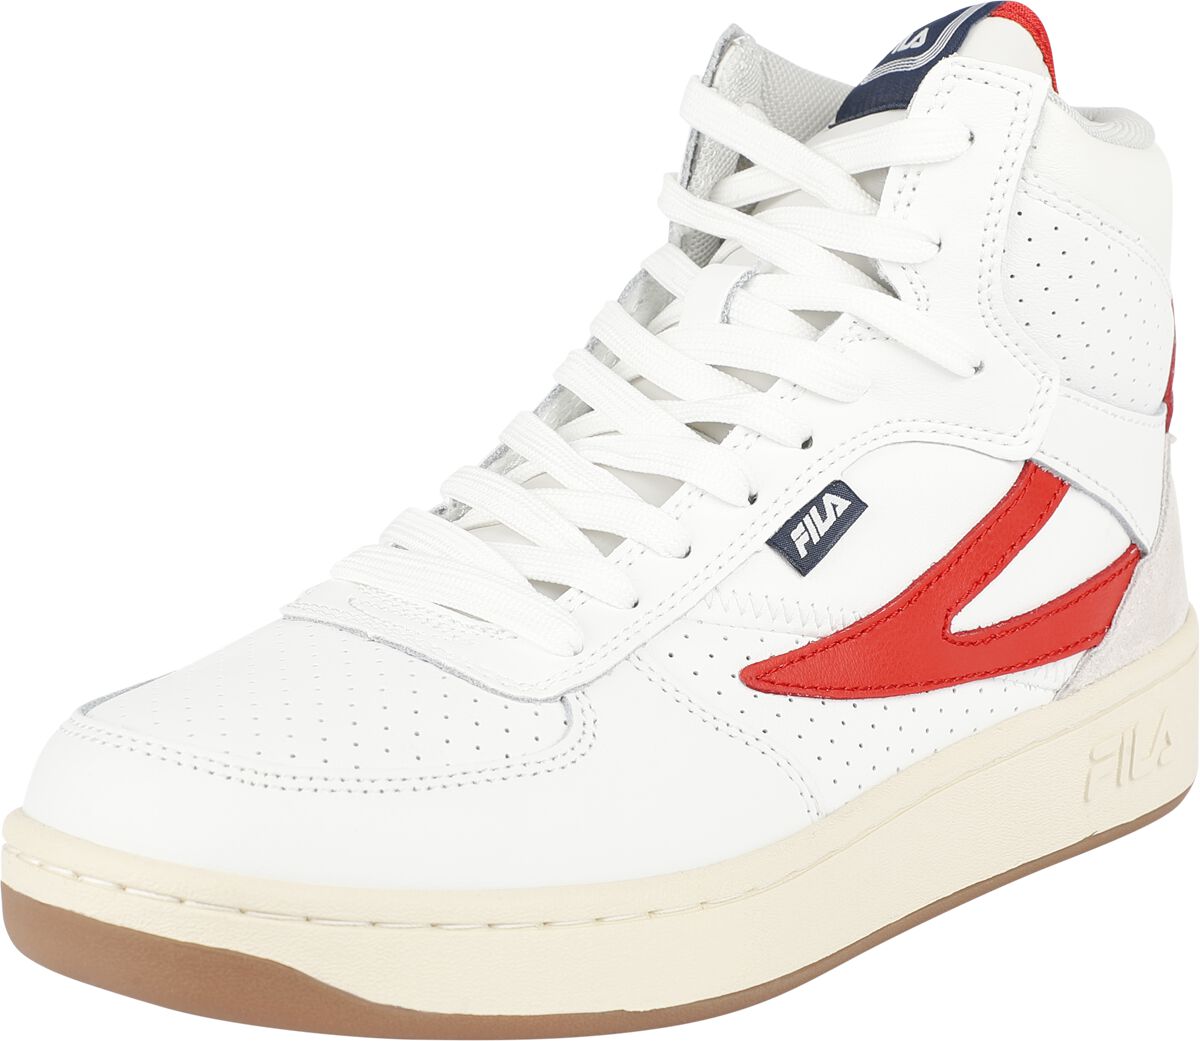 Fila FILA SEVARO mid wmn Sneaker high weiß rot in EU40